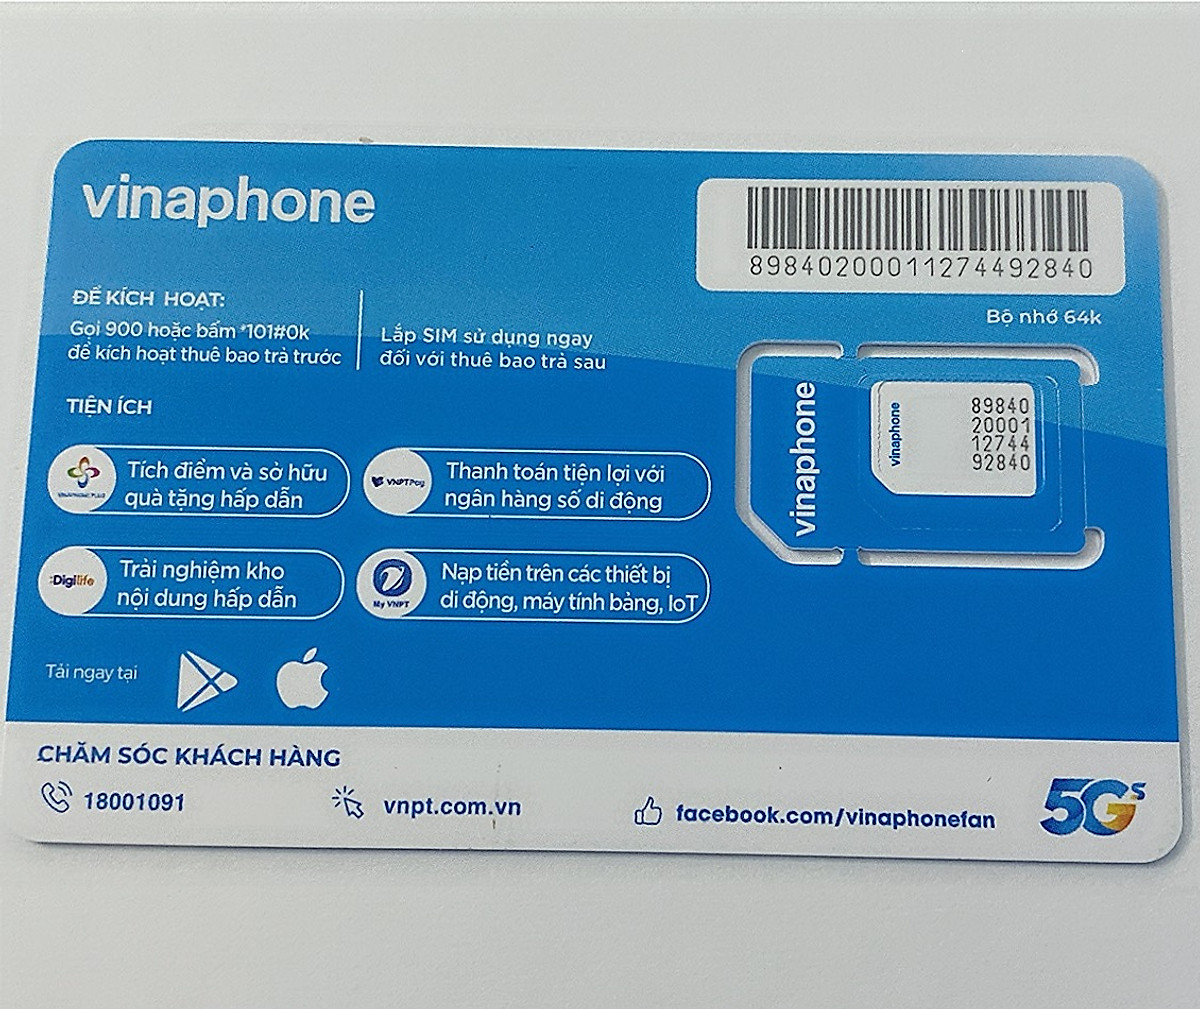 Sim 3G/ 4G Vinaphone Vd149 Tặng 4GB/Ngày Nghe Gọi Nội Mạng Miễn Phí Dưới 30 Phút, Tặng thêm 200 Phút Ngoại Mạng và 200 Tin Nhắn Ngoại Mạng - Mẫu ngẫu nhiên